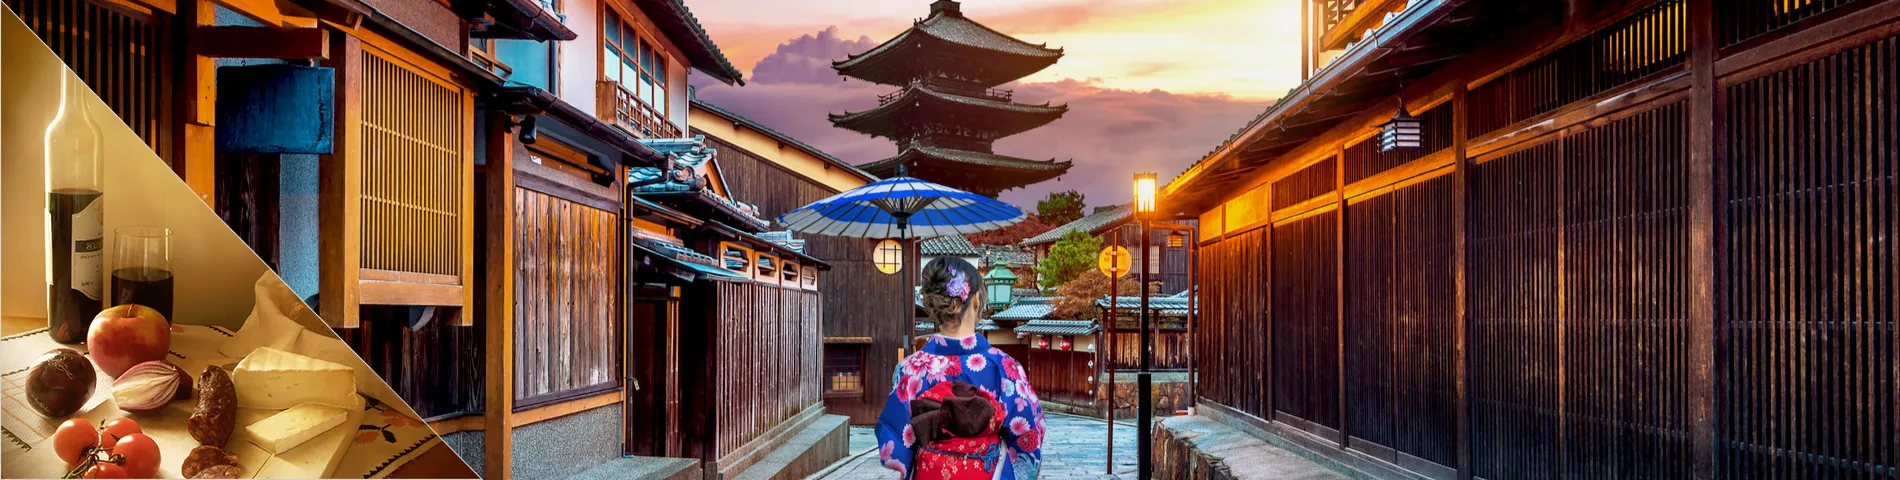 Japan - Japanska & kultur